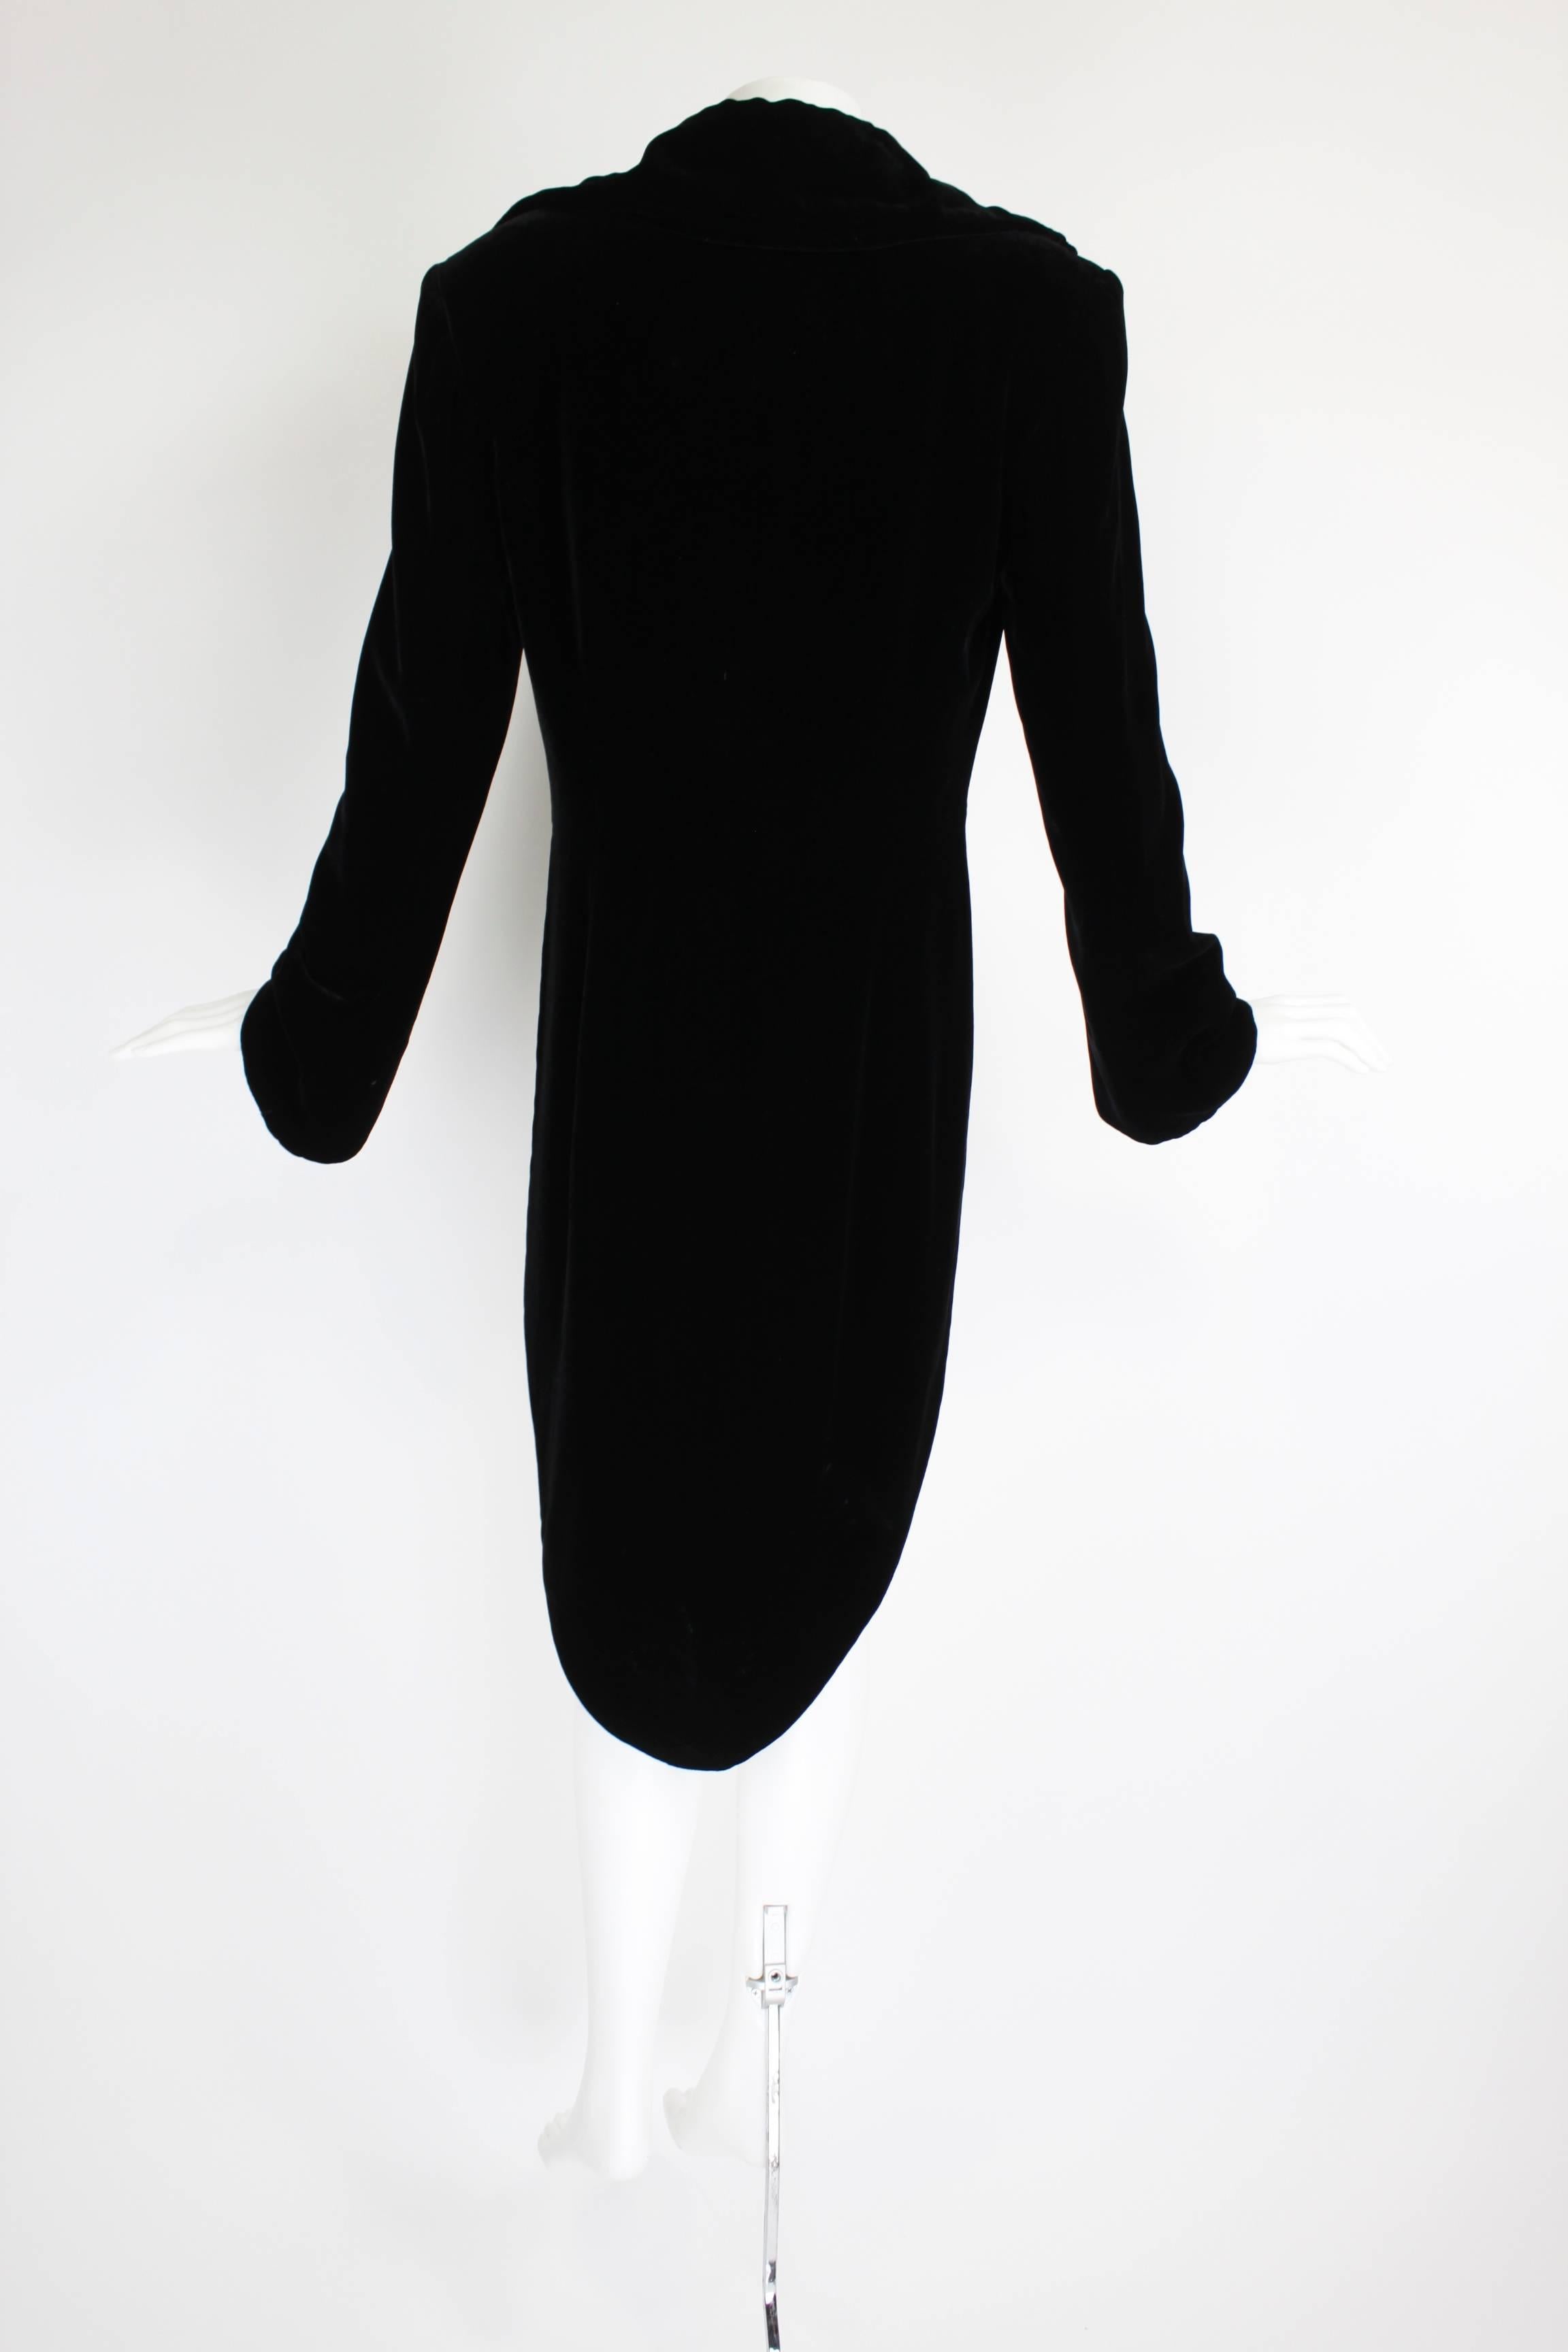 Women's 1990s OMO Norma Kamali Black Velvet Tailcoat